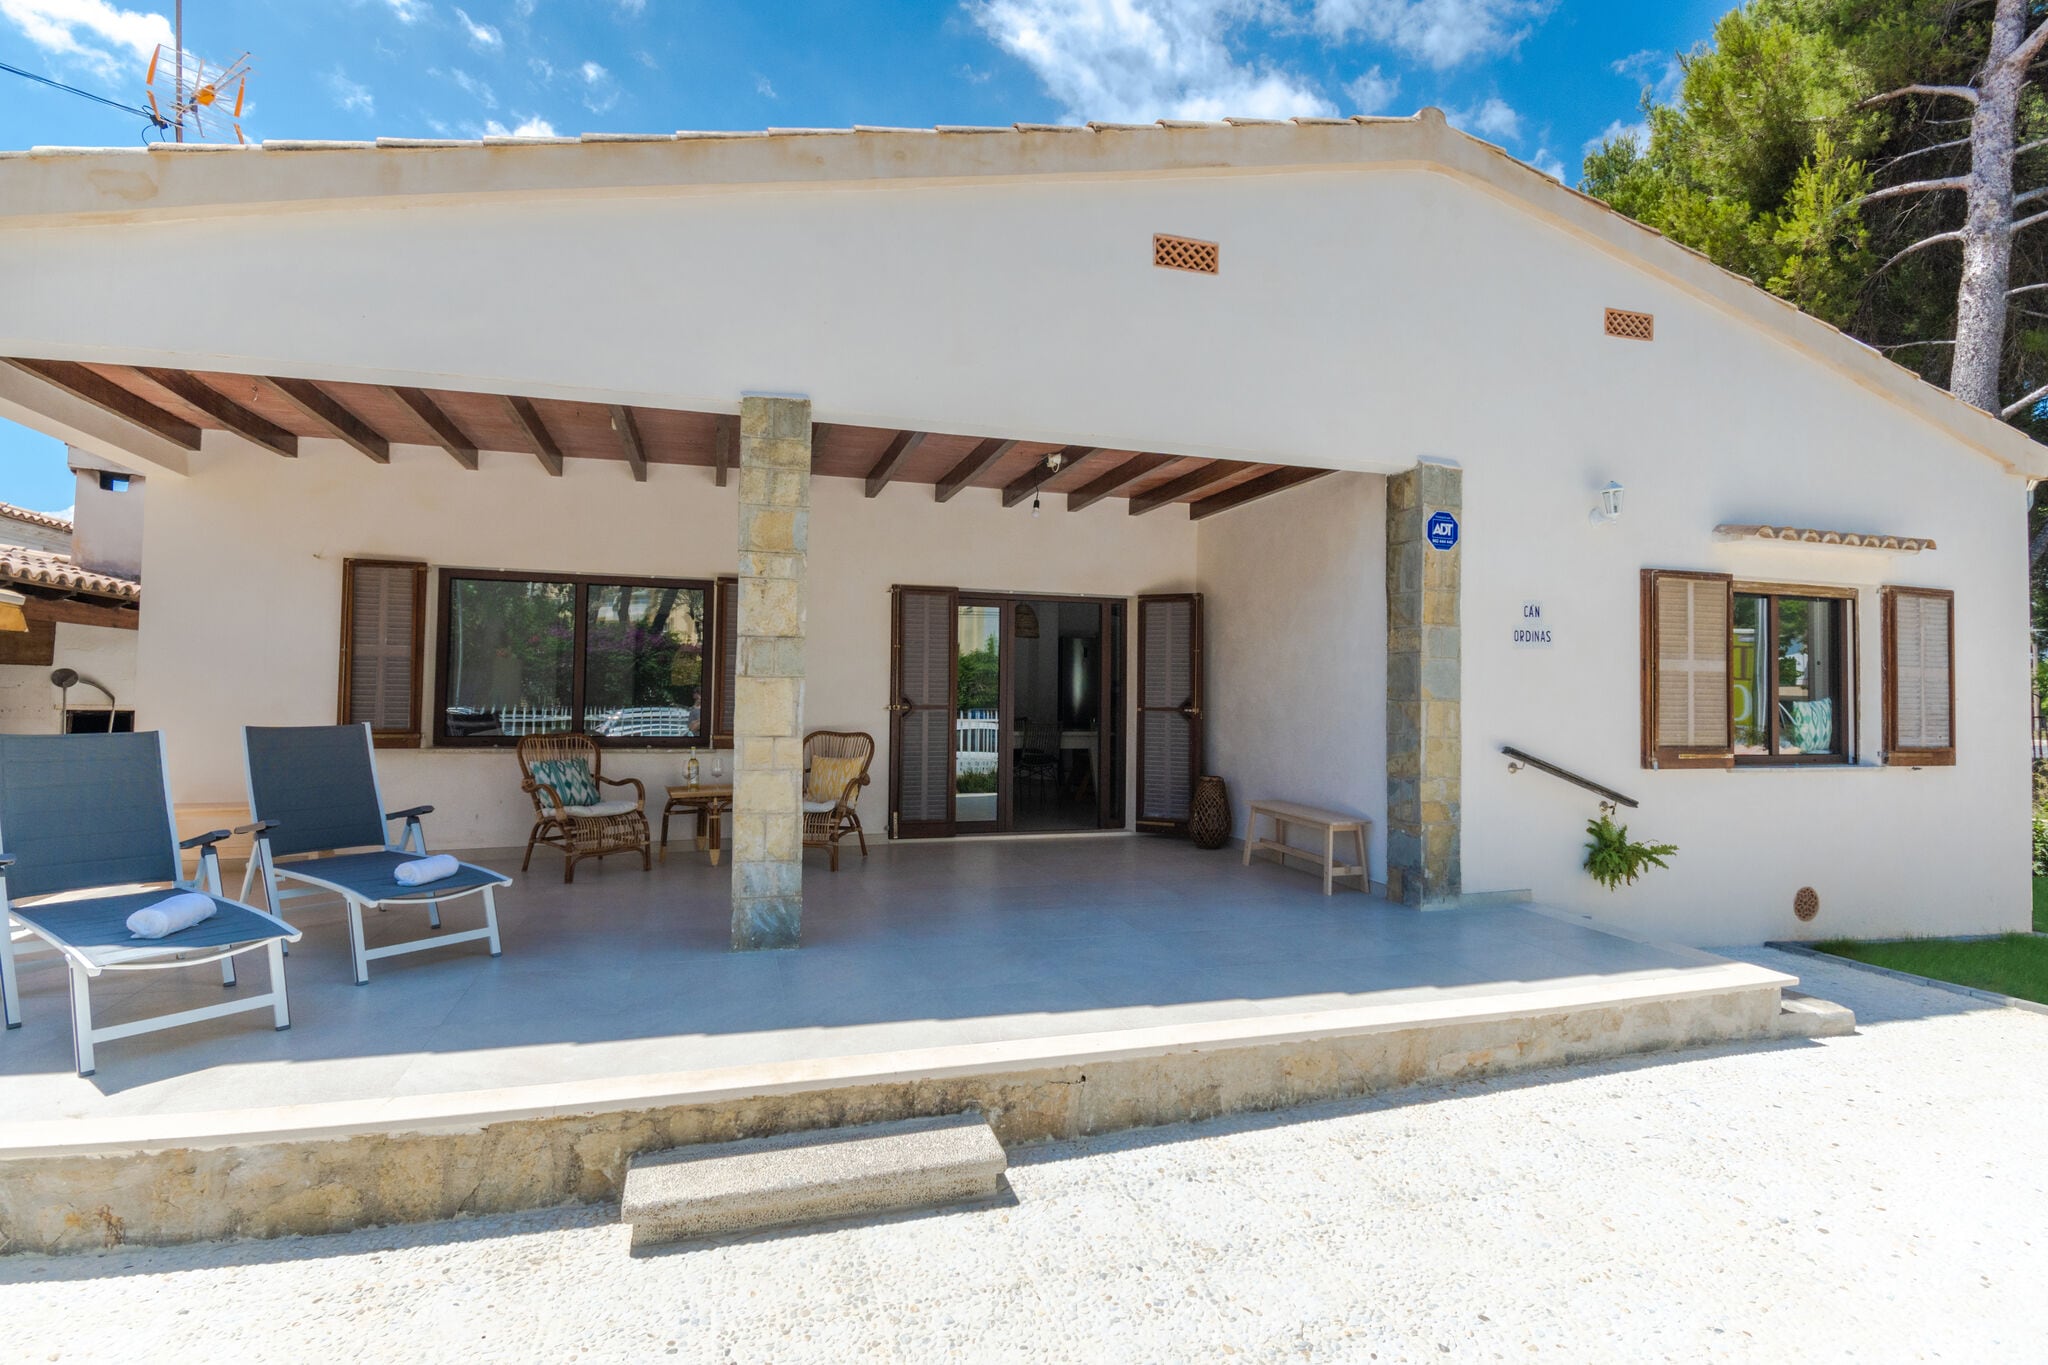 Renovierte moderne Villa, nur 50 m vom Strand von Alcúdia entfernt